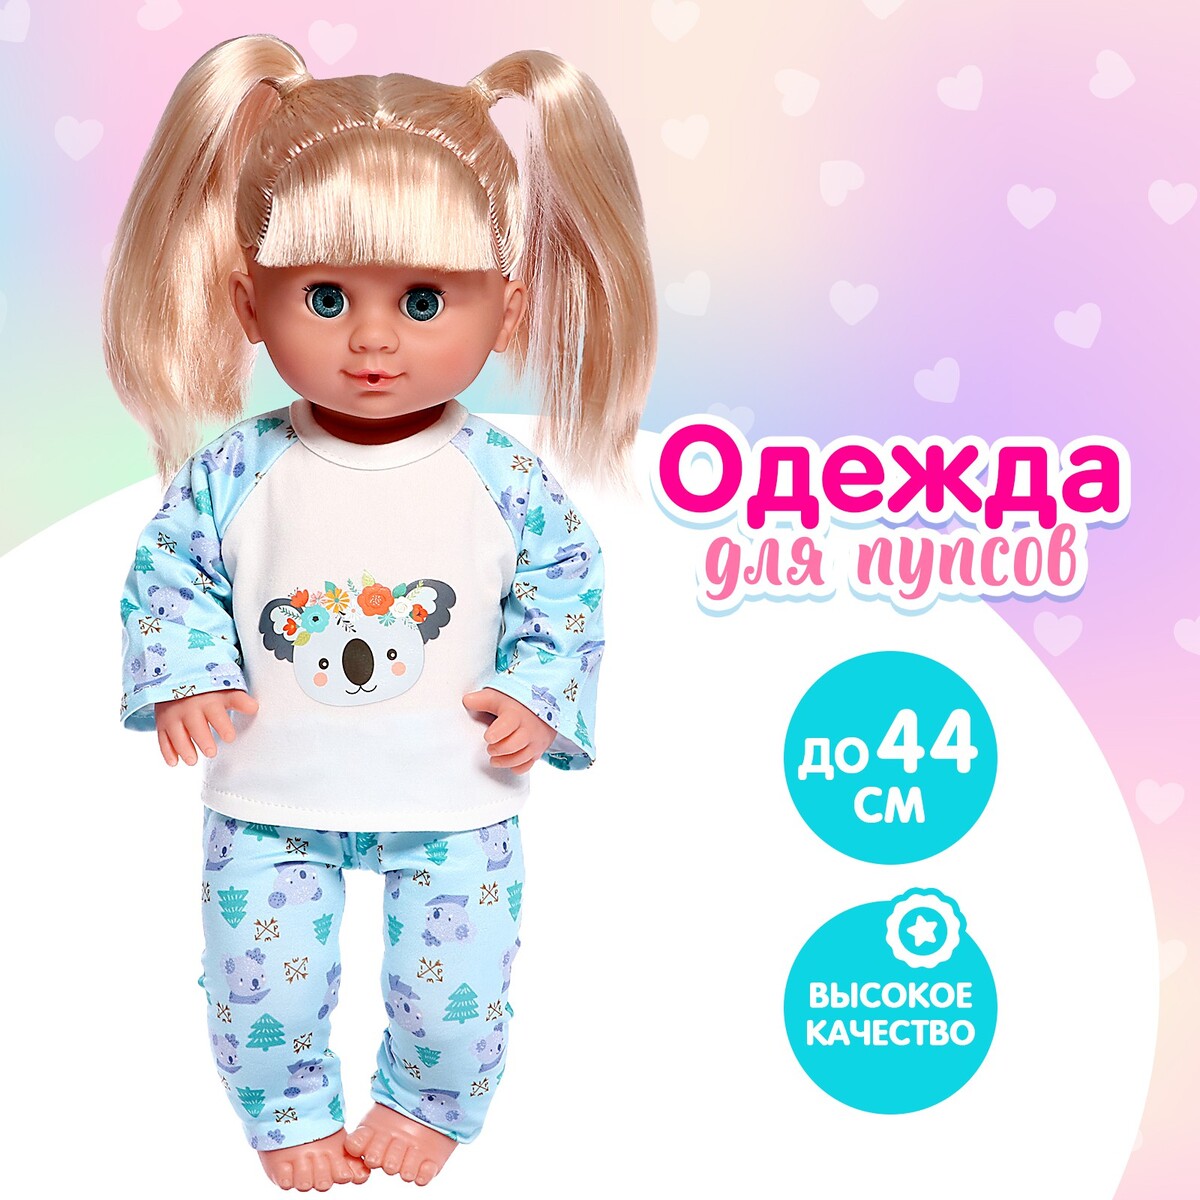 Пижама для кукол 40-44 см, 2 вещи, текстиль, на липучках странные вещи